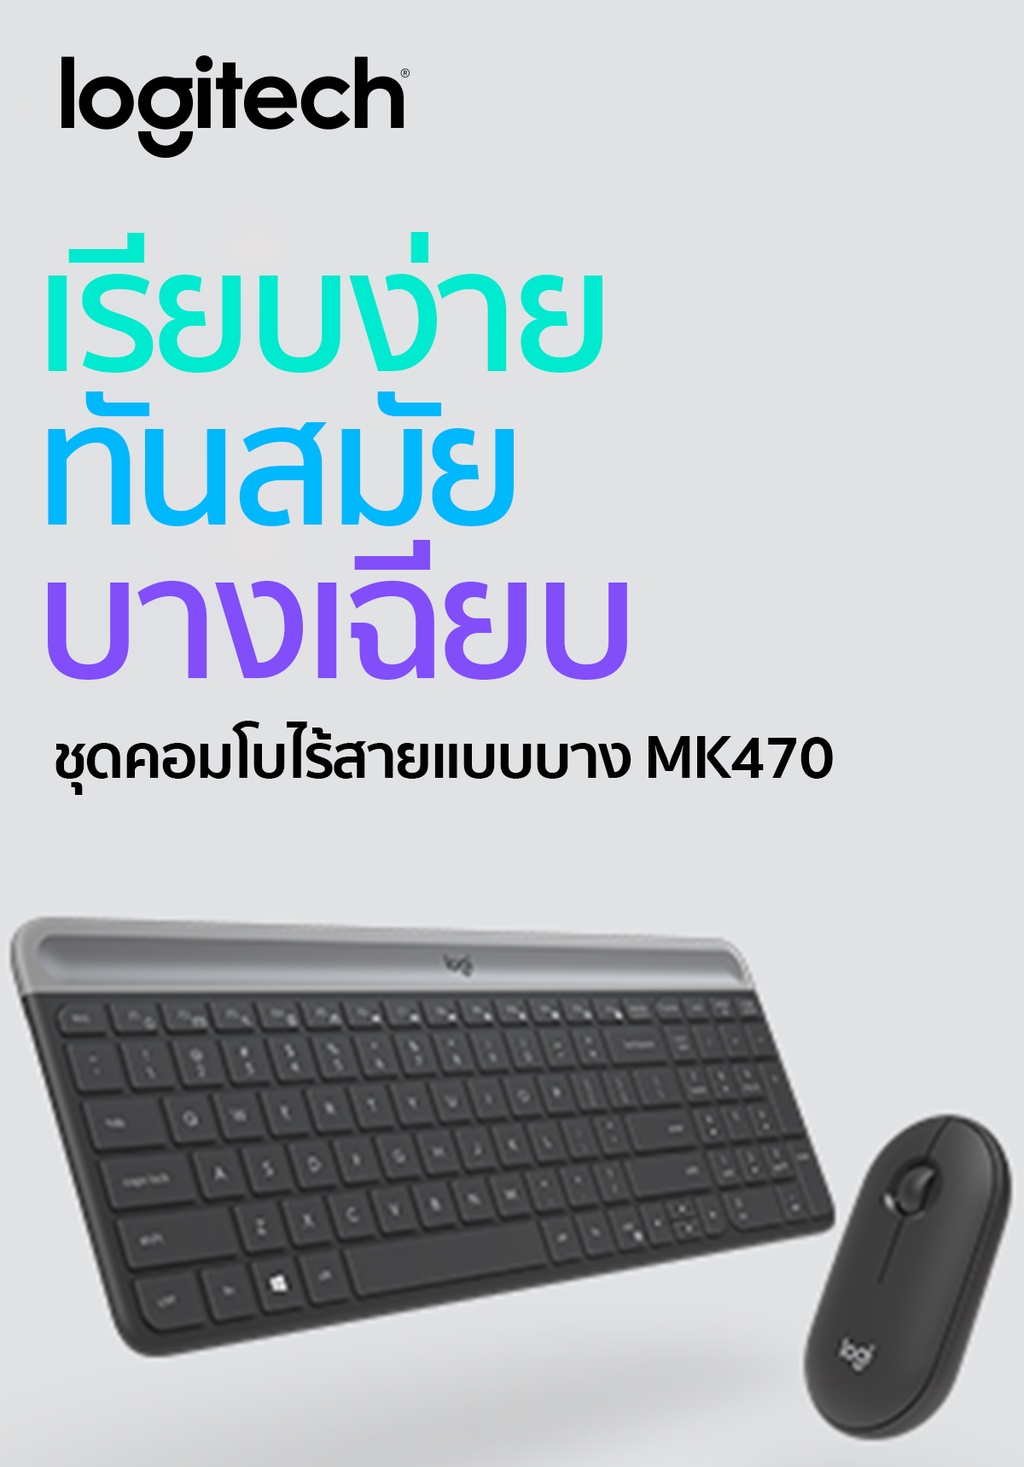 ภาพประกอบของ Logitech MK470 COMBO Wireless Mouse & Keyboard SLIM ( เมาส์ คีย์บอร์ด ไร้สายแบบบางดีไซน์ทันสมัย) (มีทั้งคีย์แคป ไทย/อังกฤษและคีย์แคปอังกฤษ)